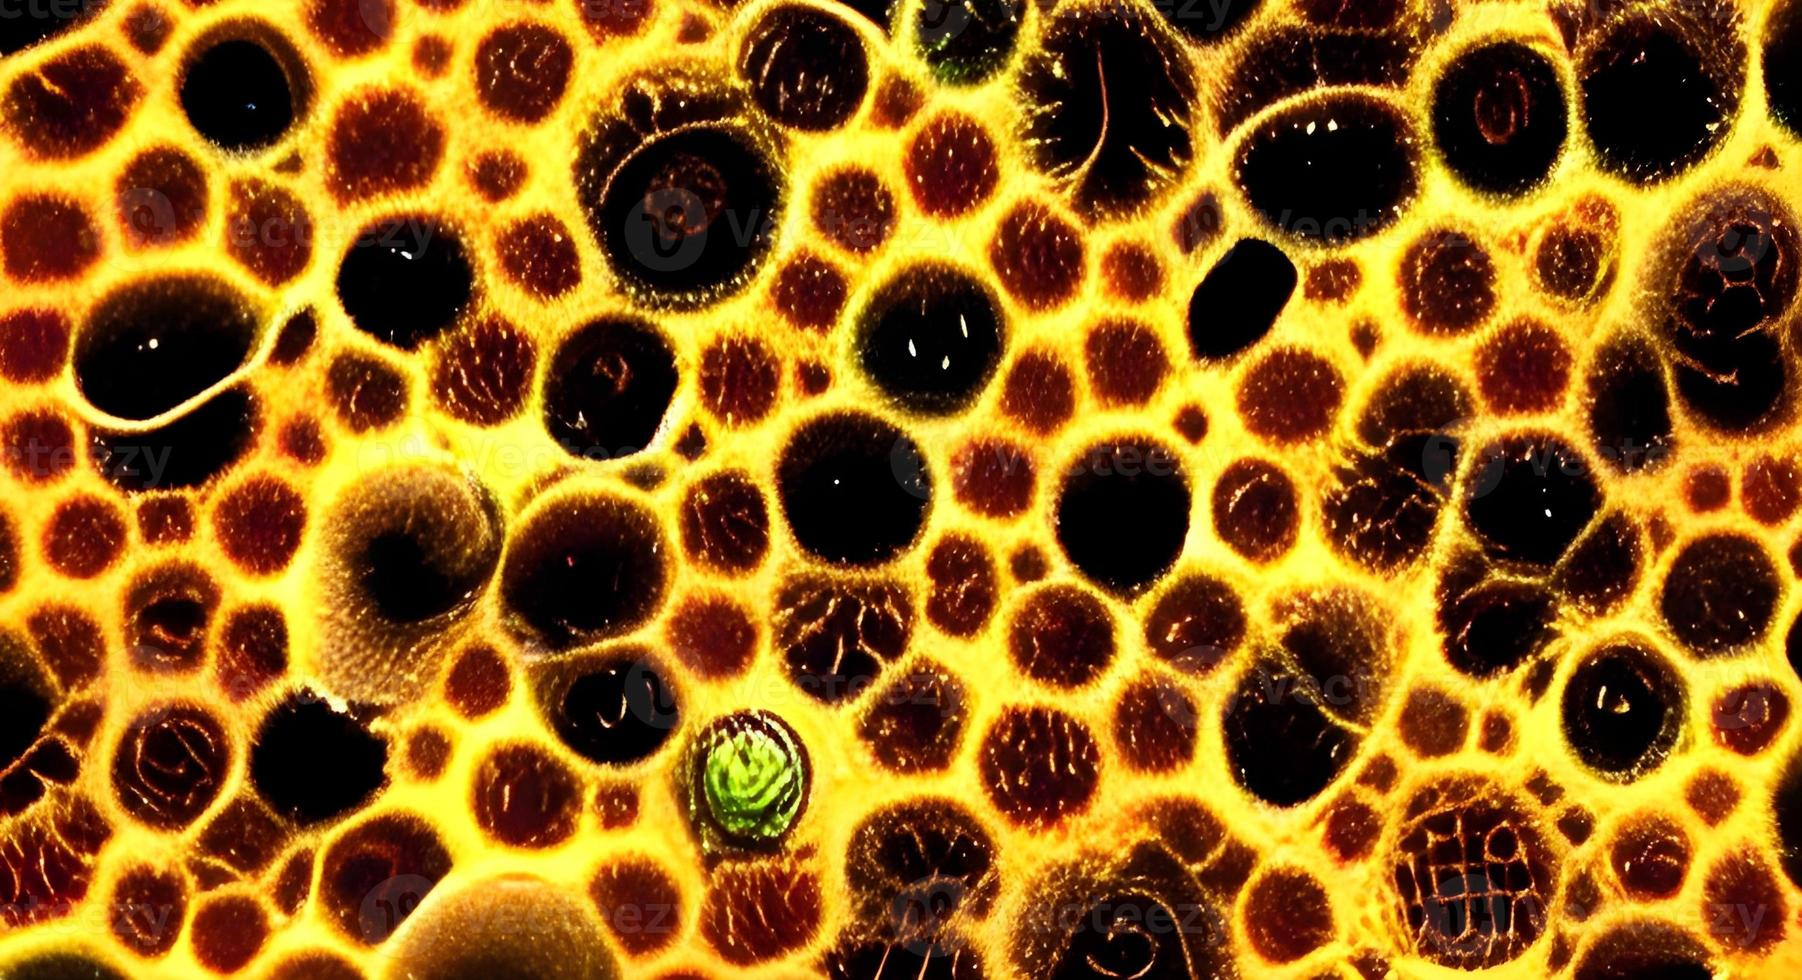 Group of virus cells. illustration of Coronavirus cells photo